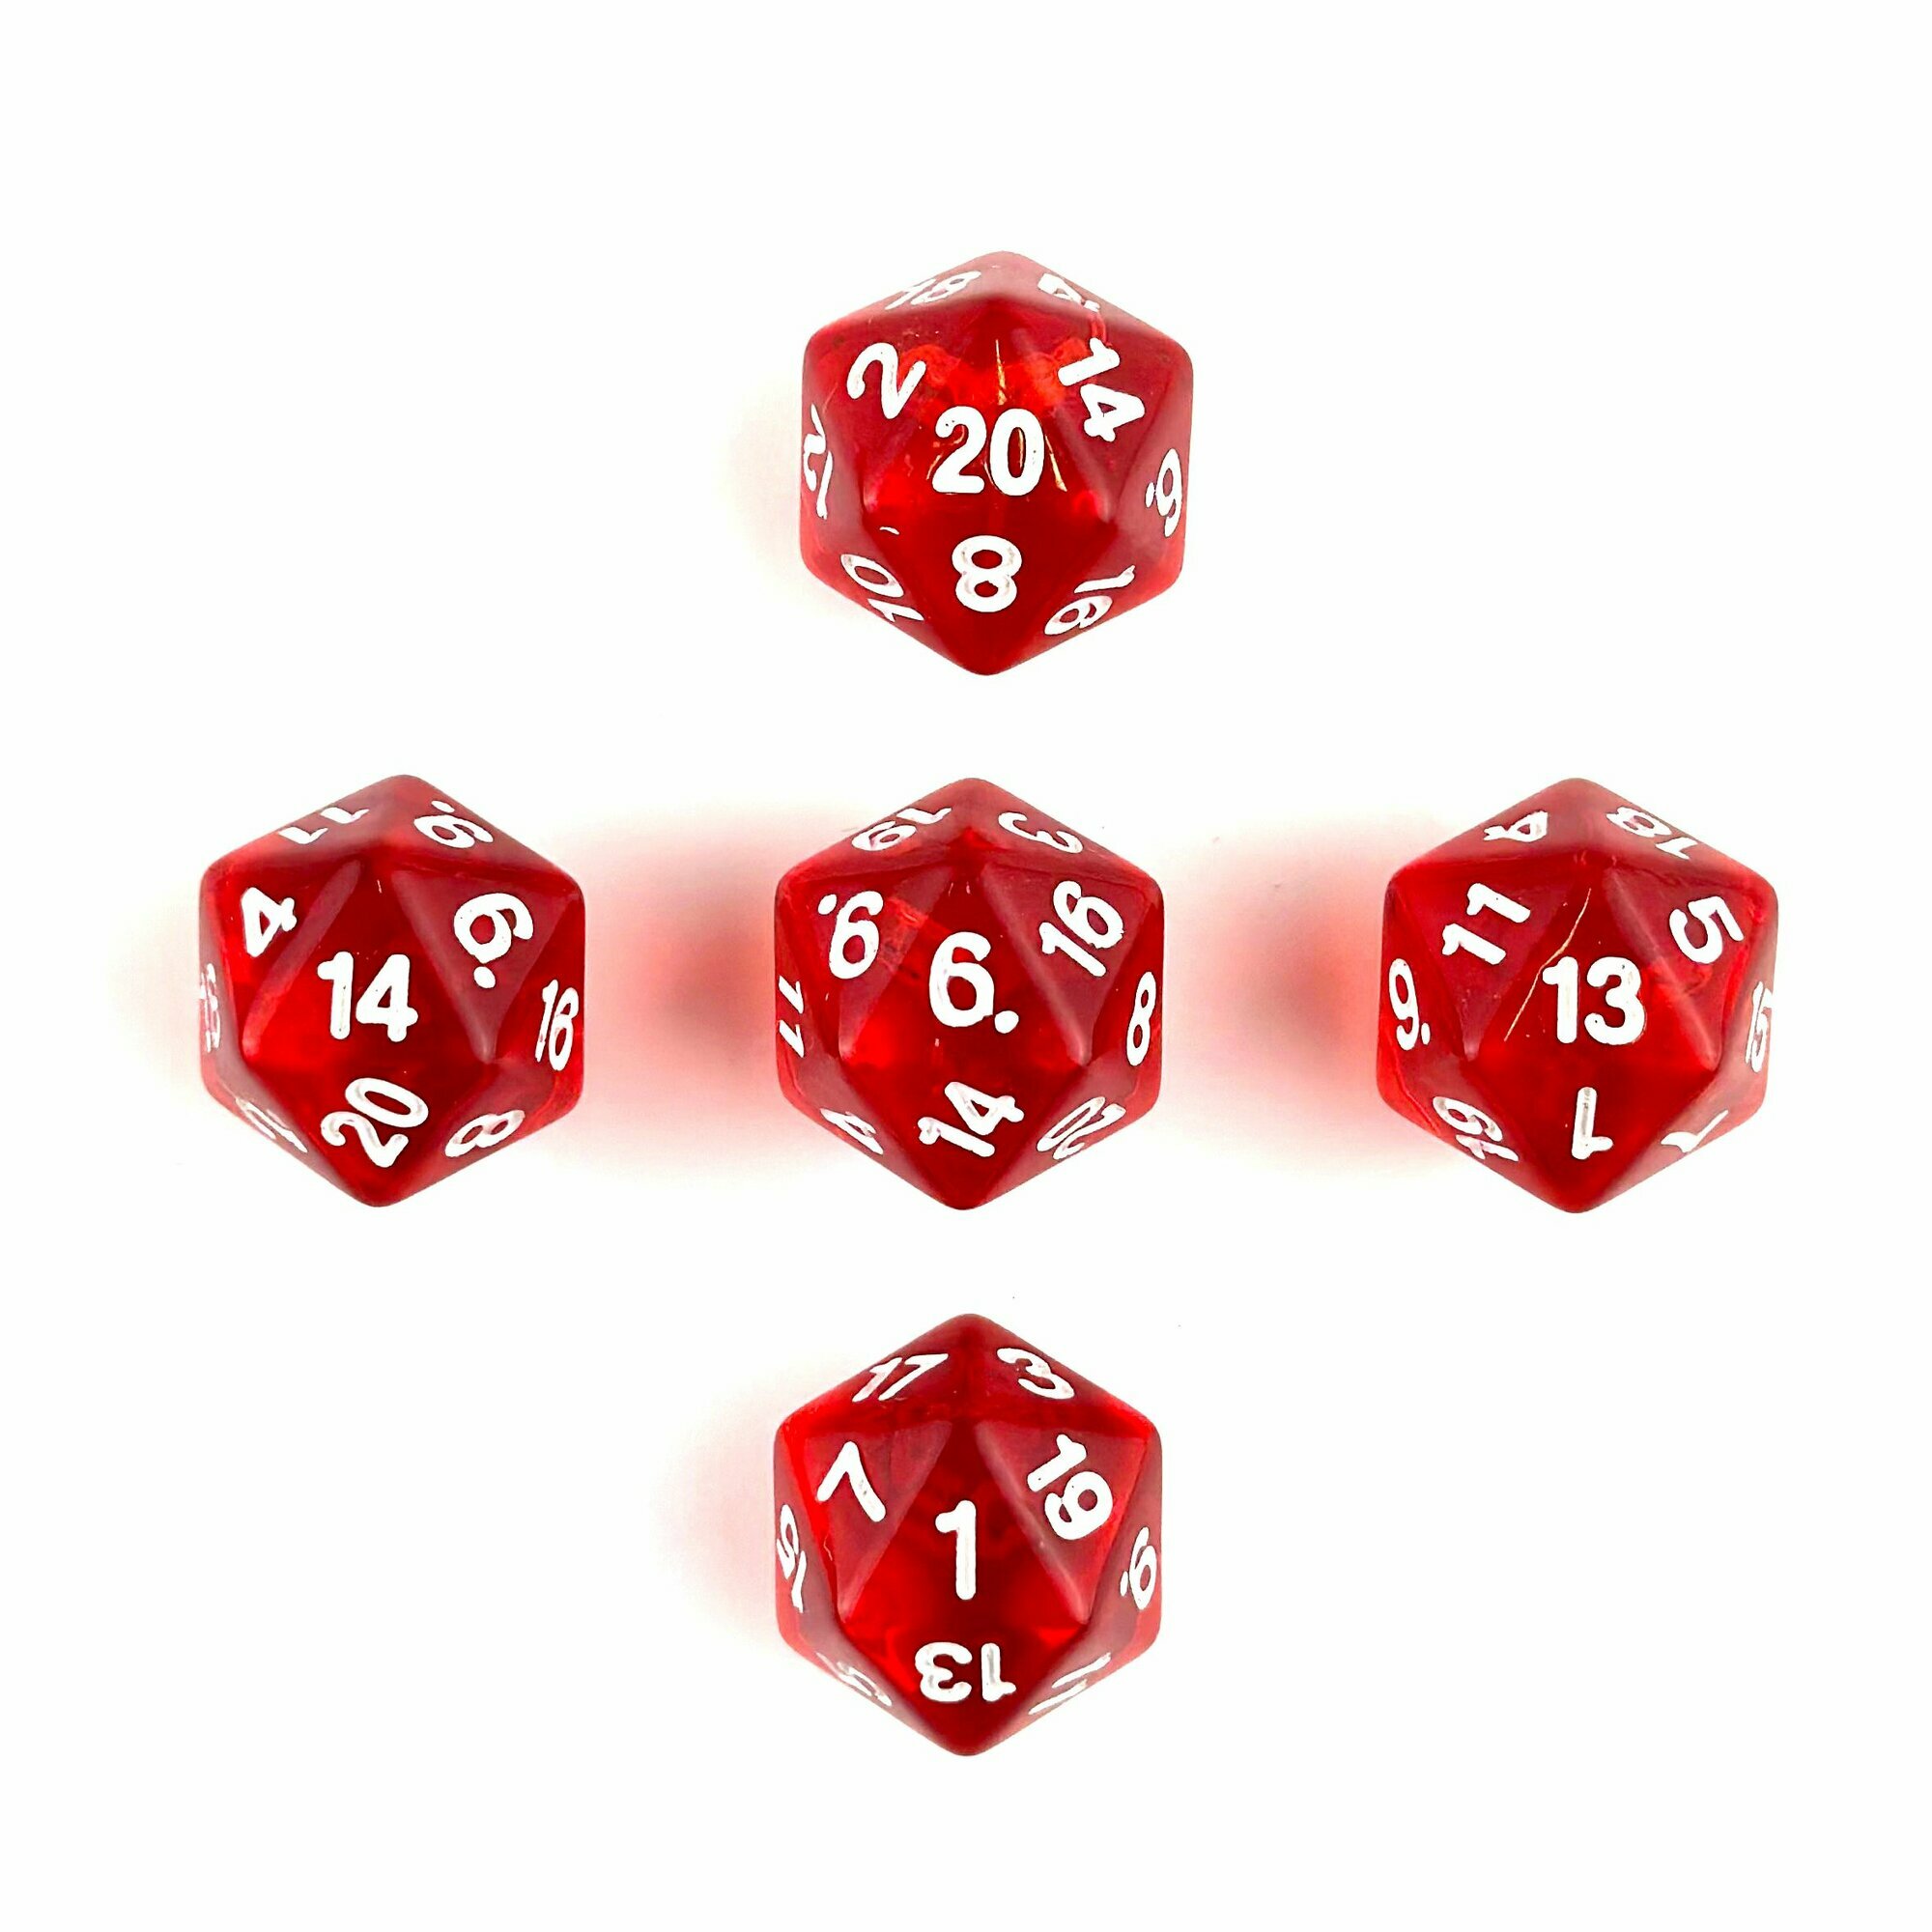 Кубик двадцатигранный красный прозрачный (D20) для настольных и ролевых игр, набор 5 штук